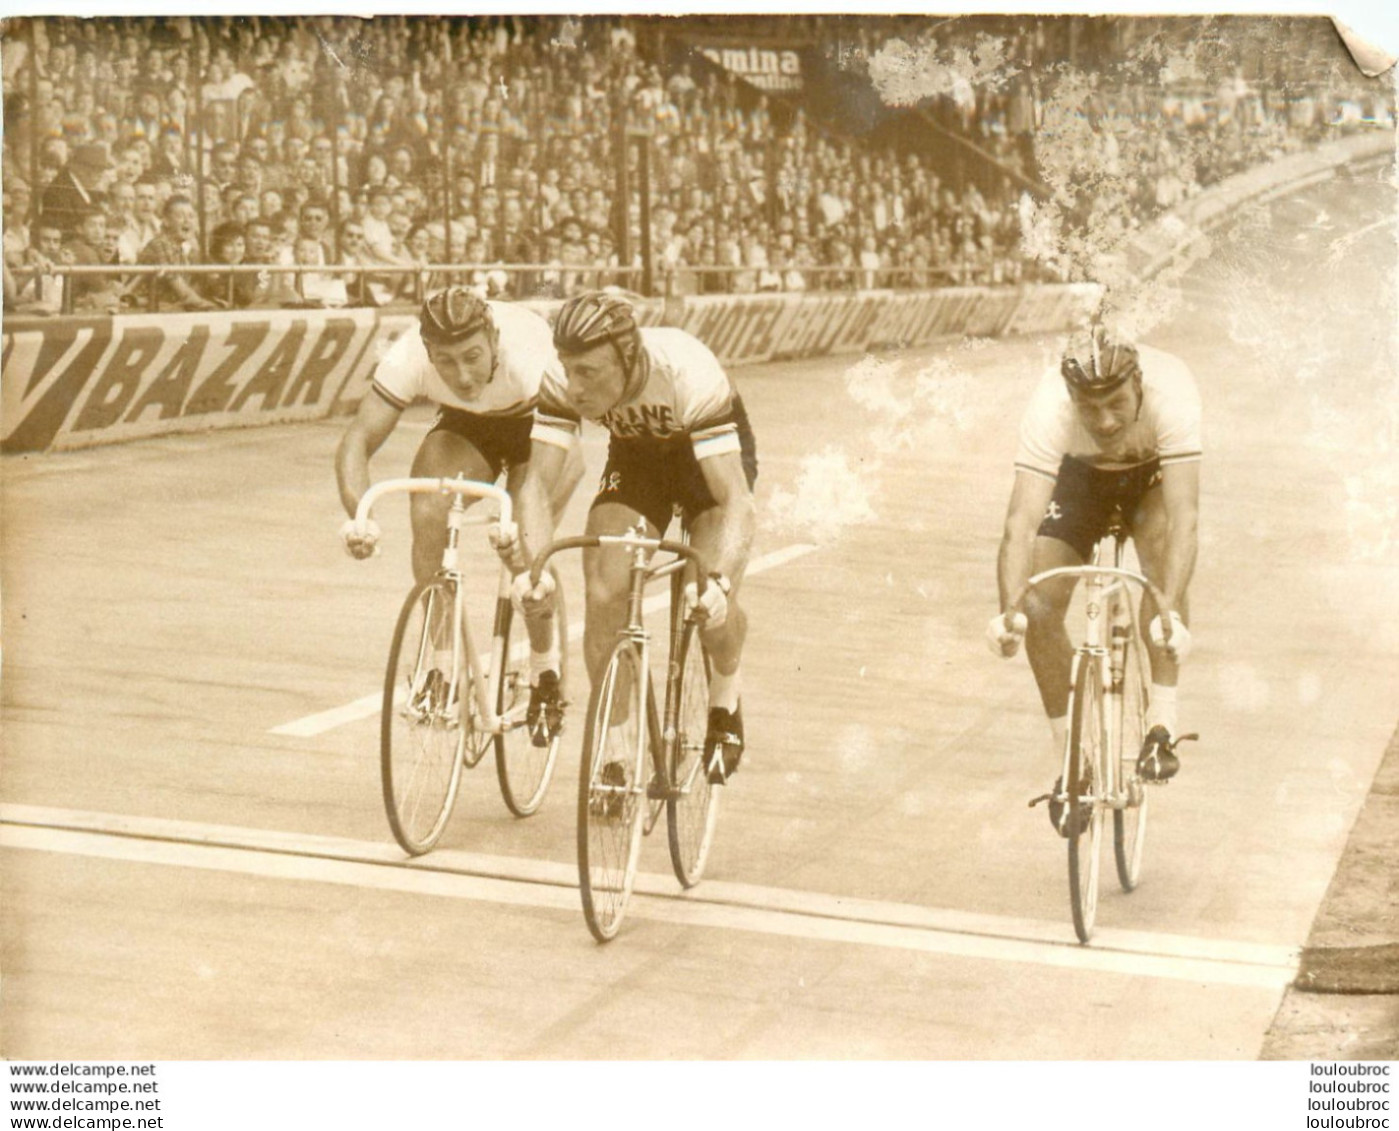 CYCLISME  1962 PARC DES PRINCES DARRIGADE BAT ALTIG ET VANNISTIN   PHOTO DE PRESSE 18X13CM - Cyclisme